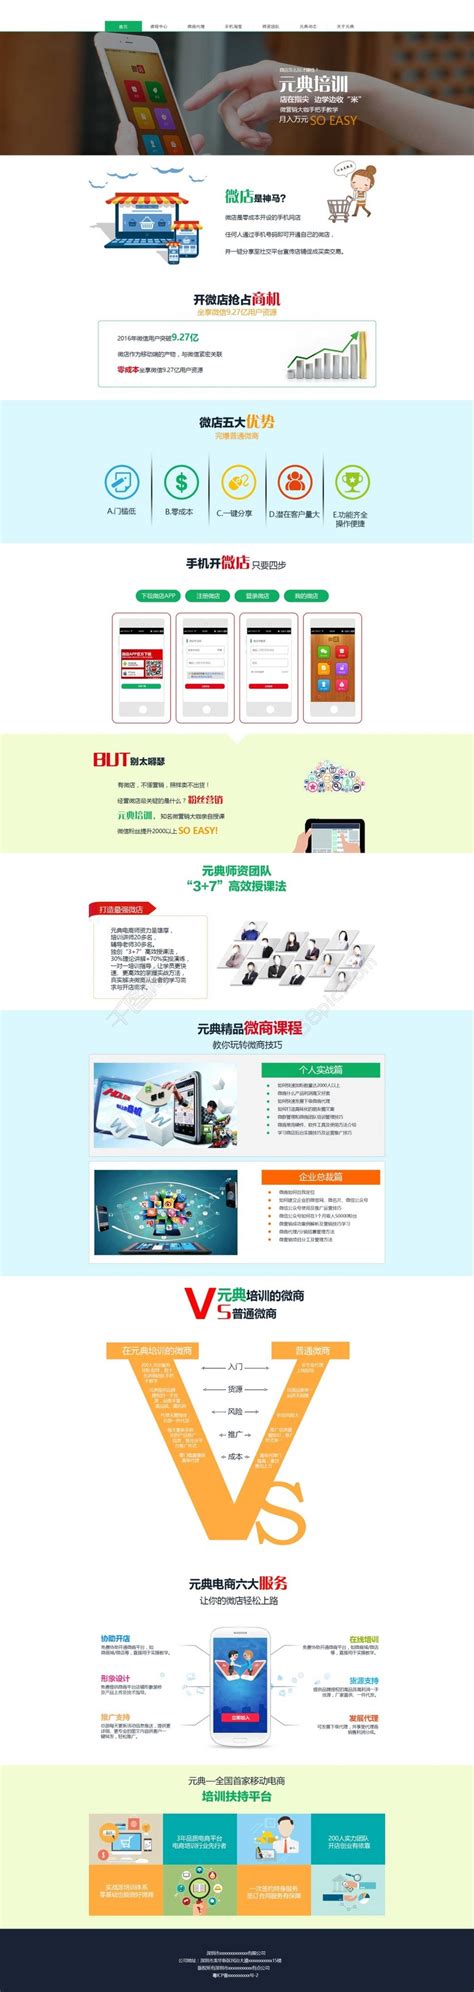 微商电商培训首页_素材中国sccnn.com